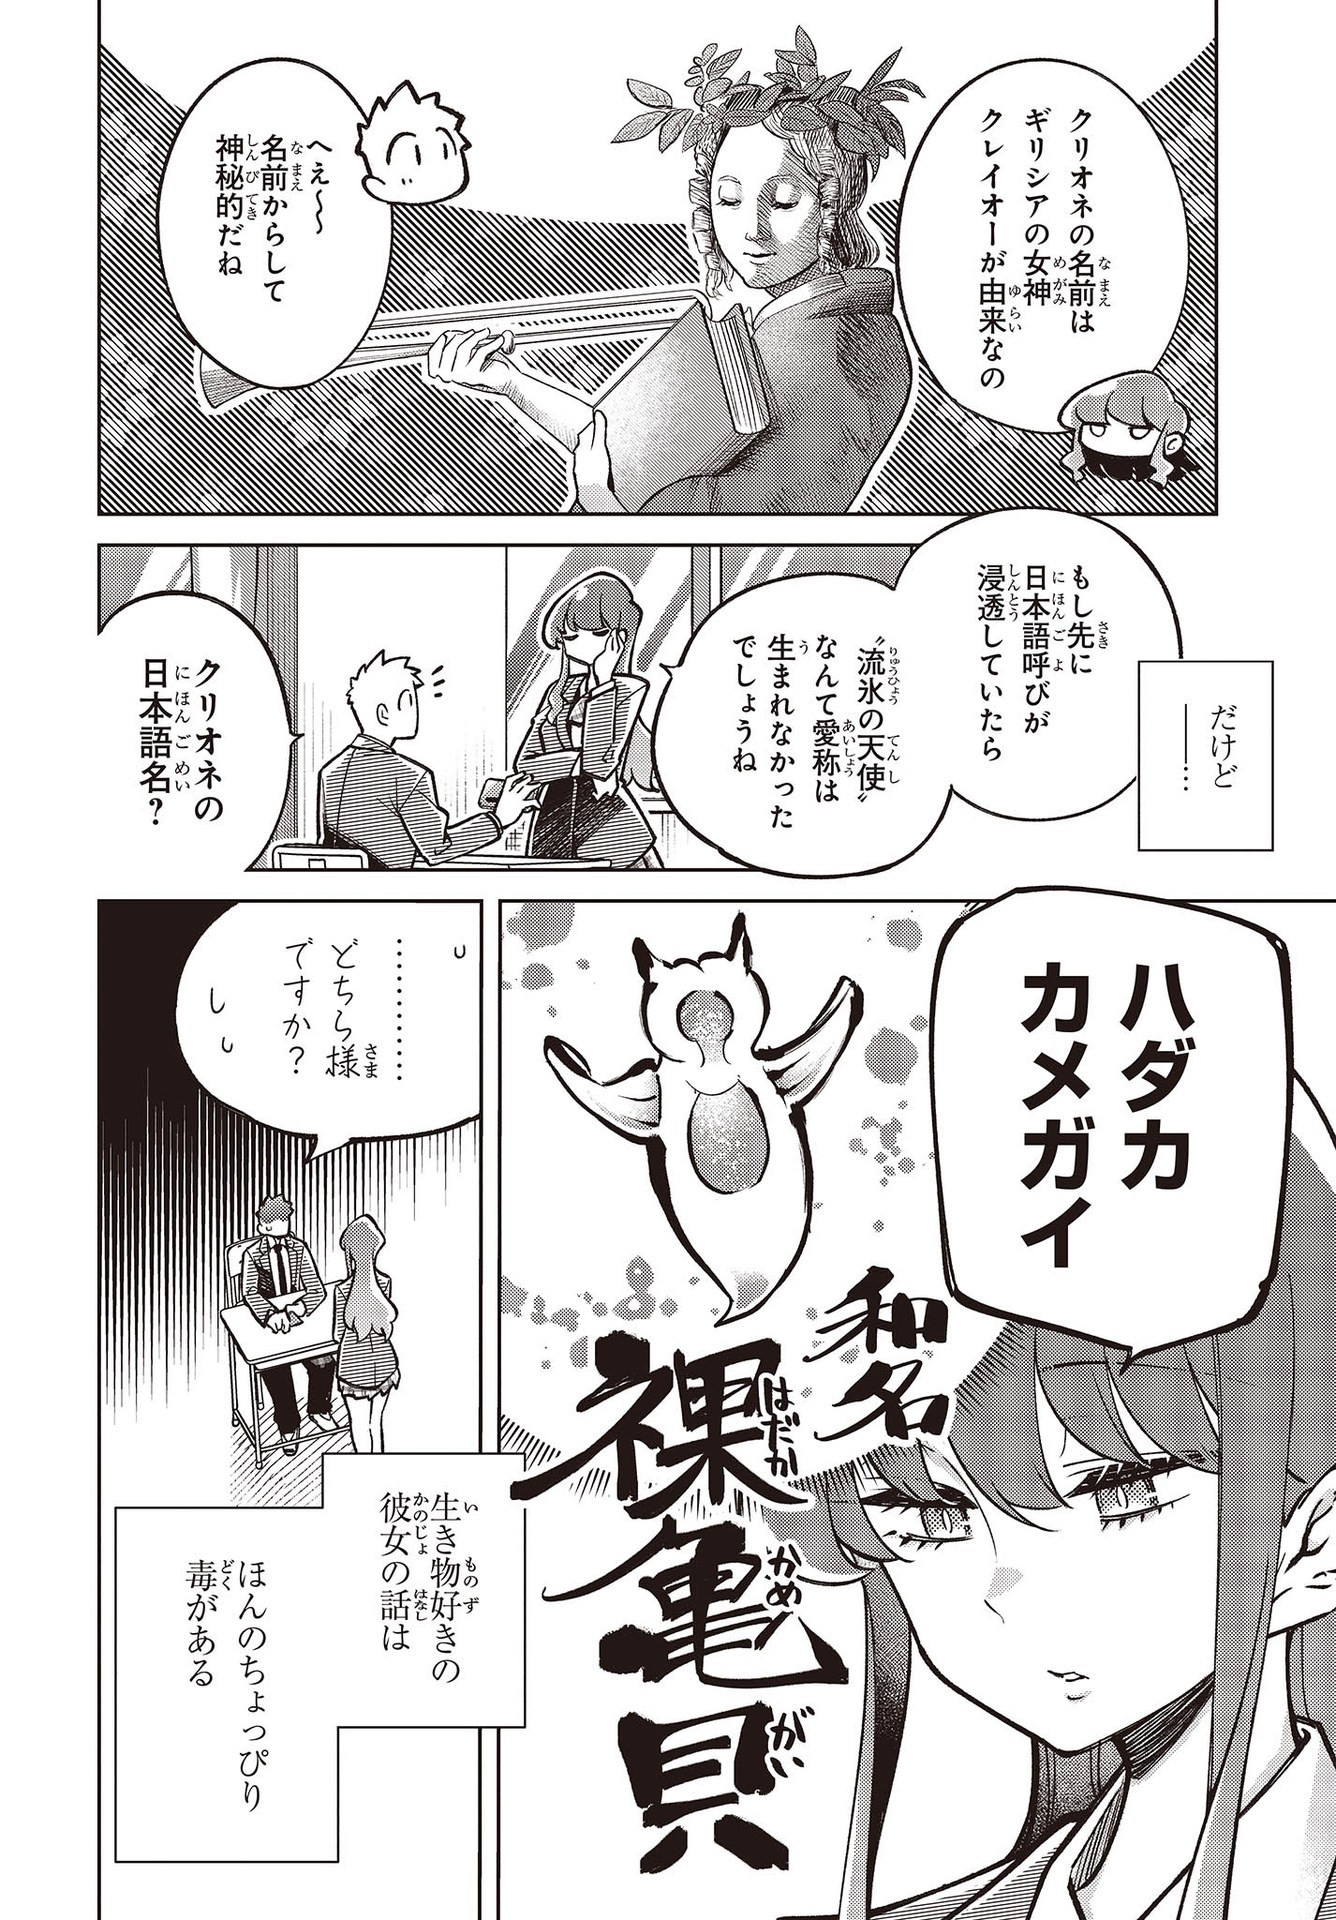 Ikimono-suki no Anima-san ni wa Honno Choppiri Doku ga aru - Chapter 3 - Page 2